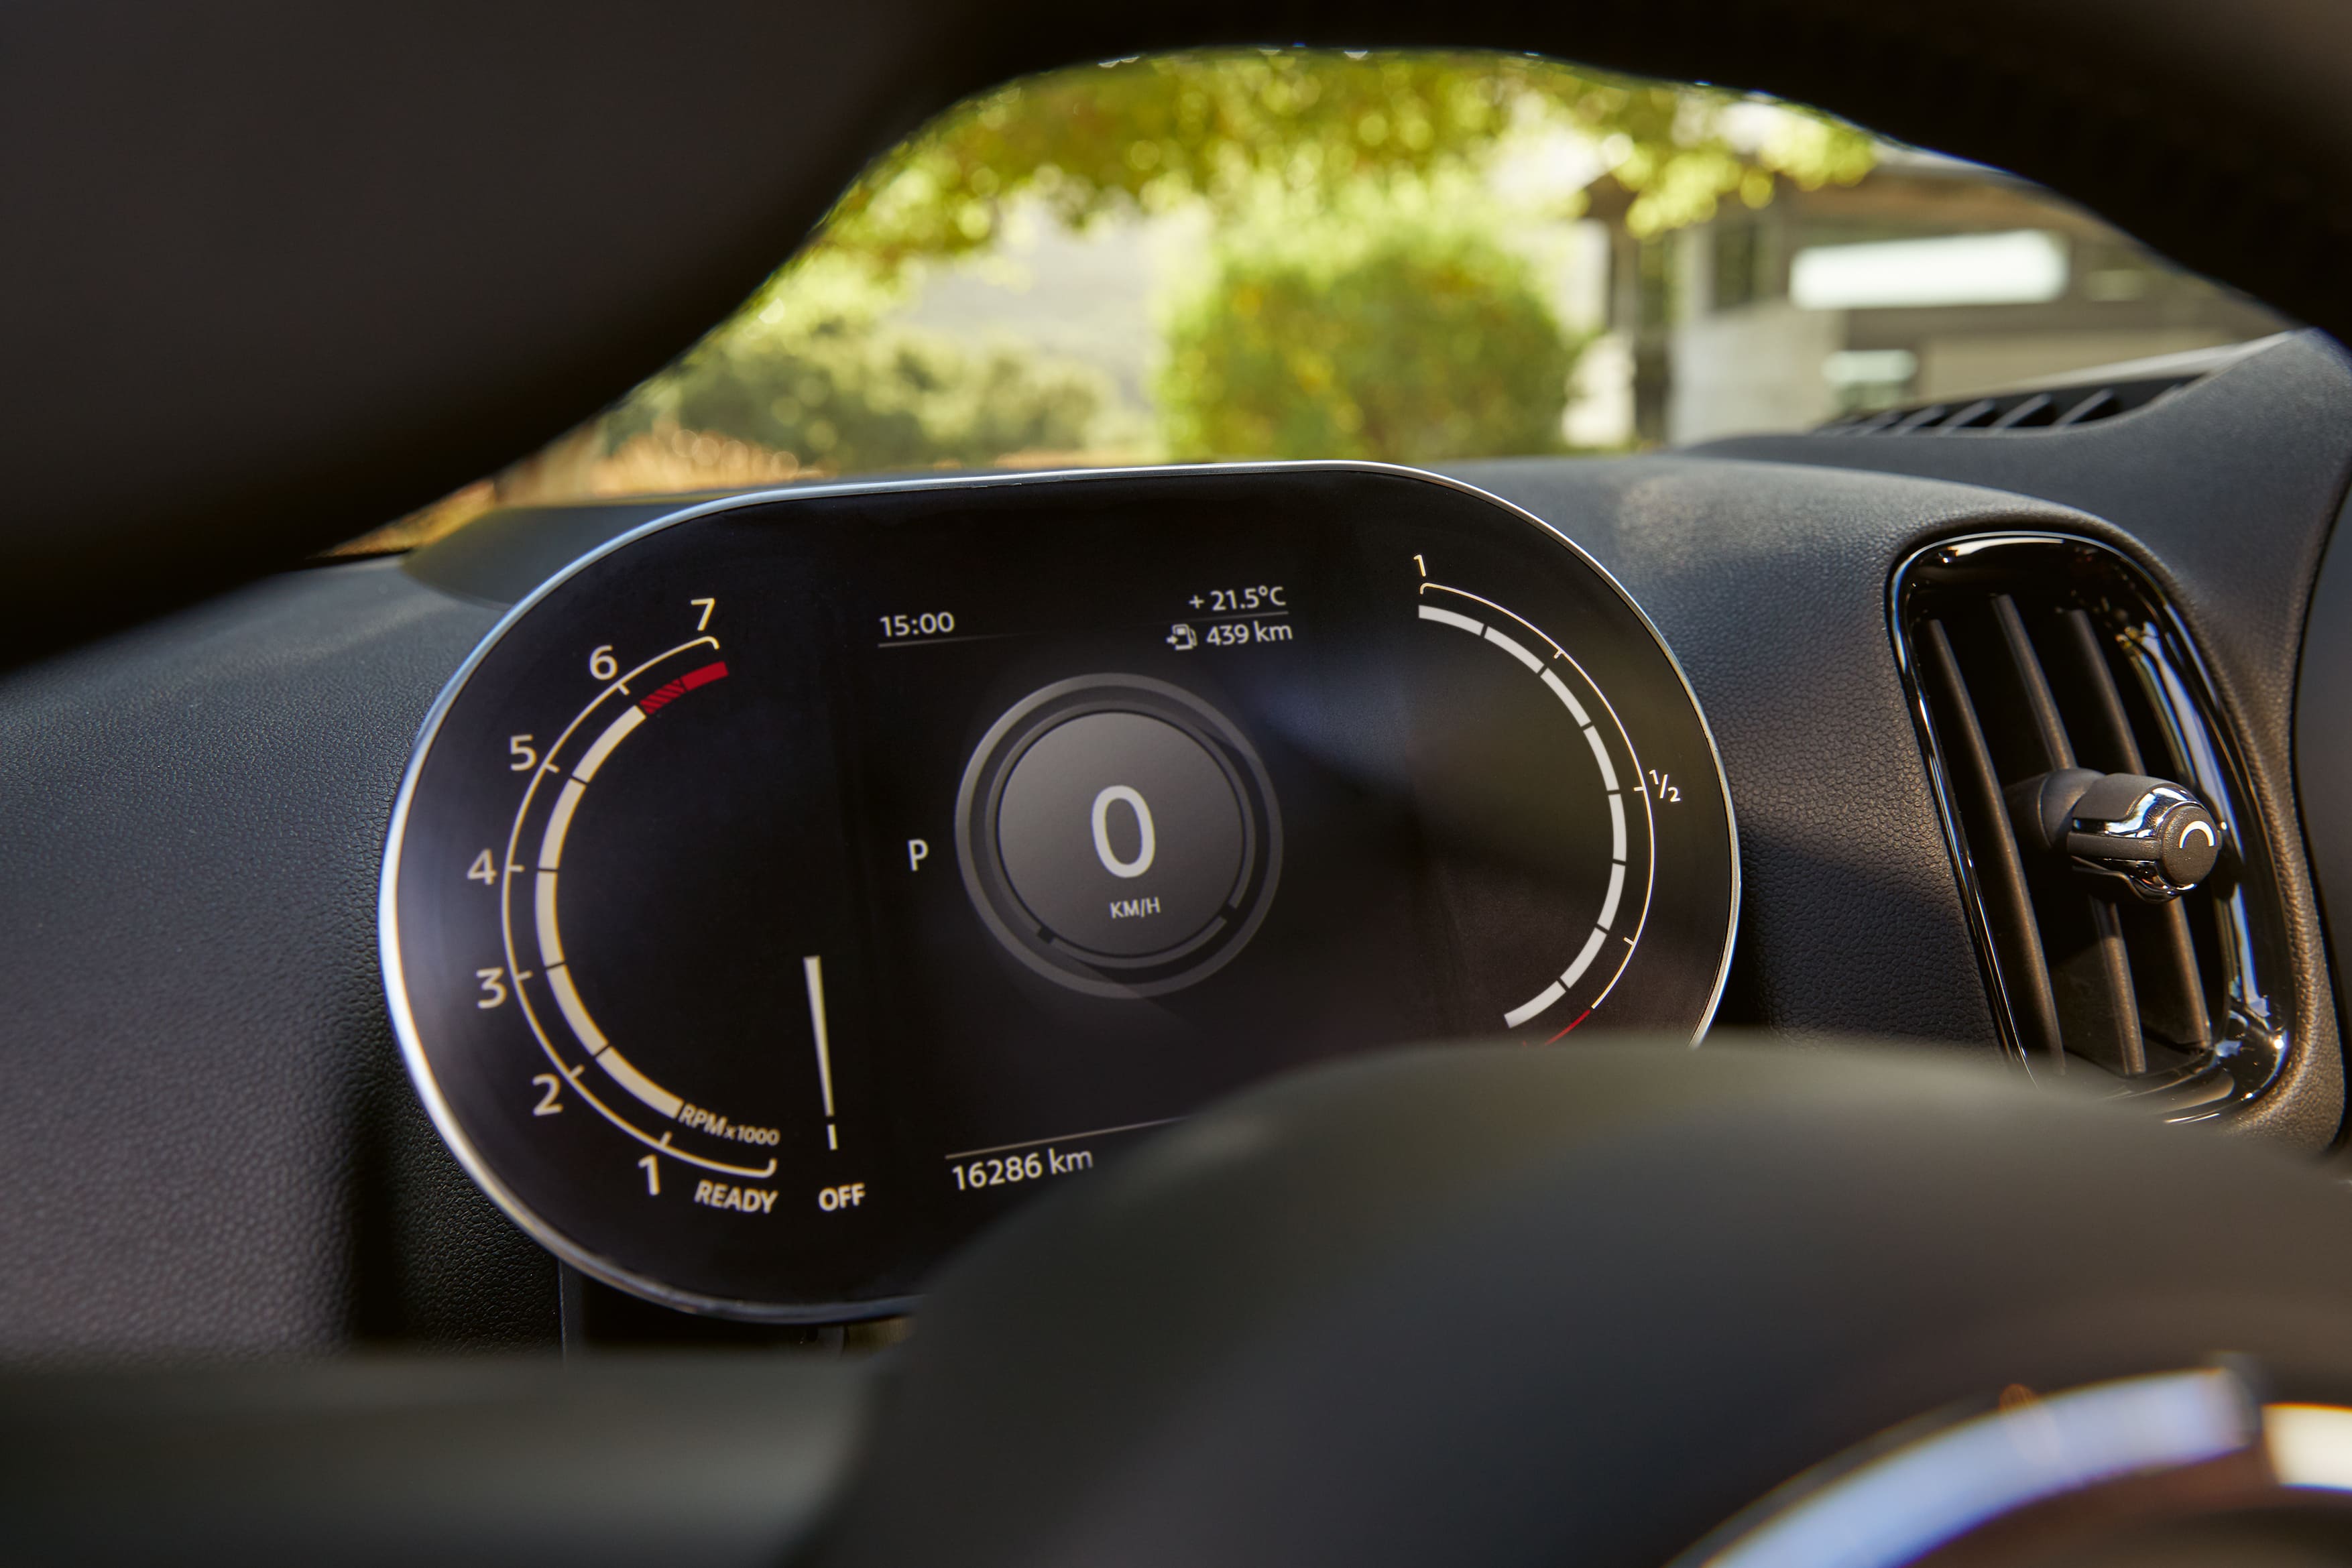 MINI 整合式數位儀表清晰提供行車資訊。